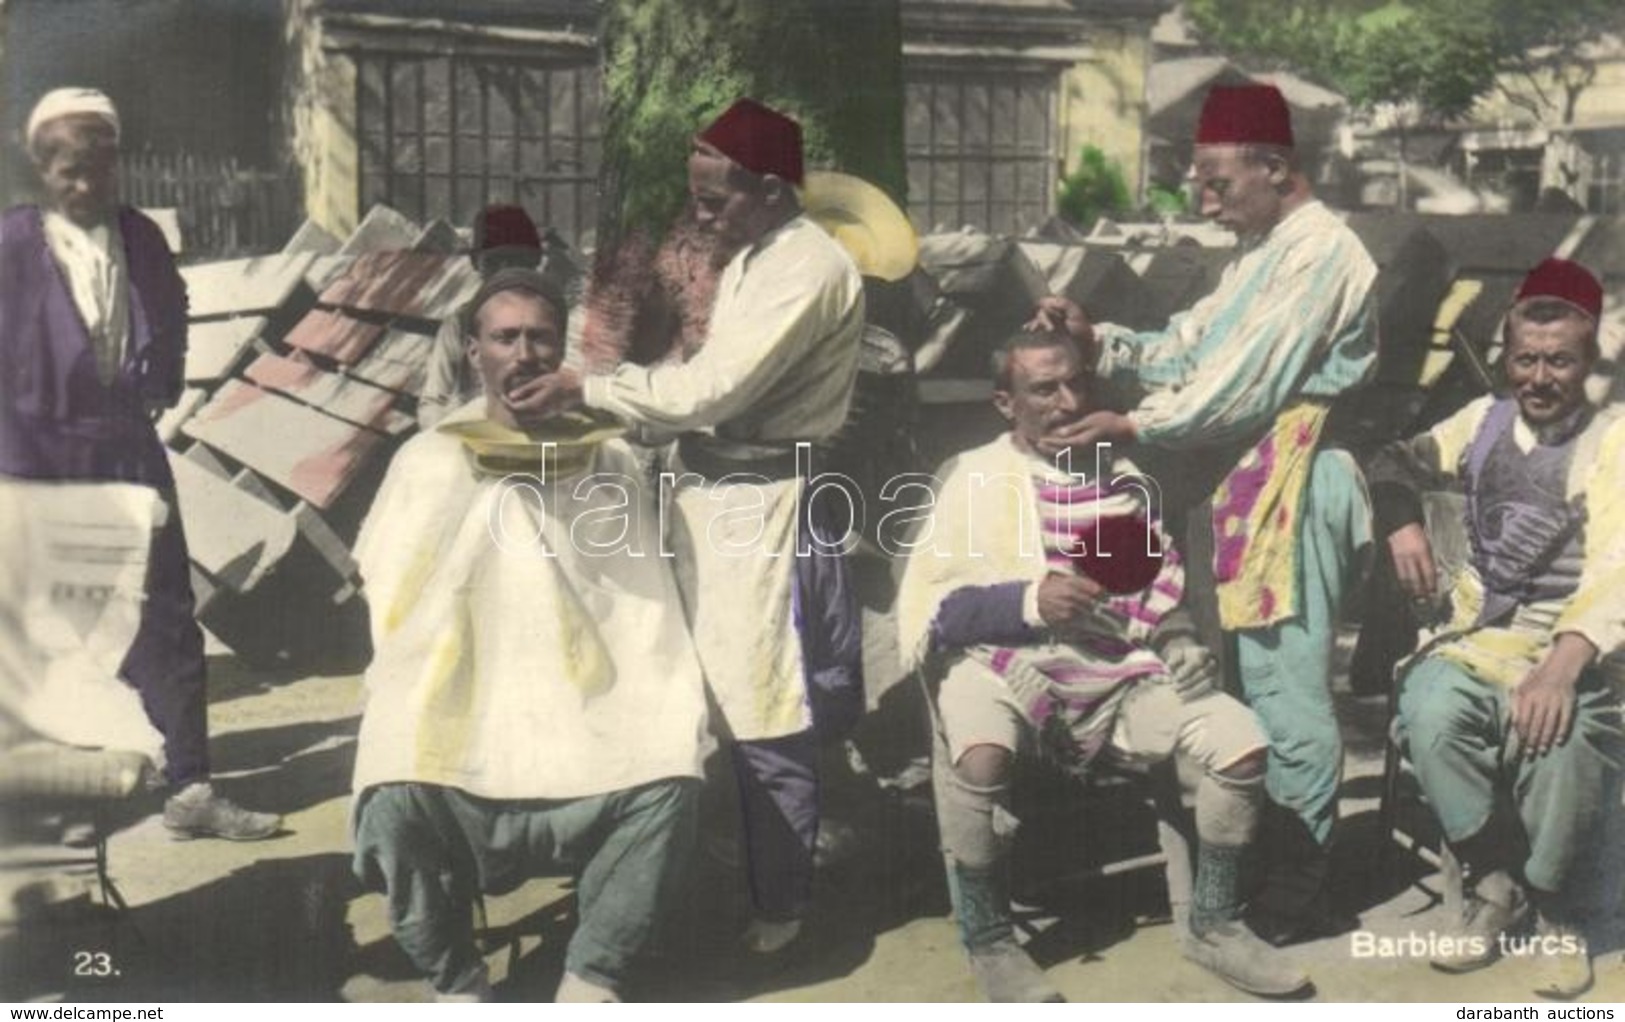 ** T1/T2 Barbiers Turcs / Turkish Barbers, Folklore - Unclassified